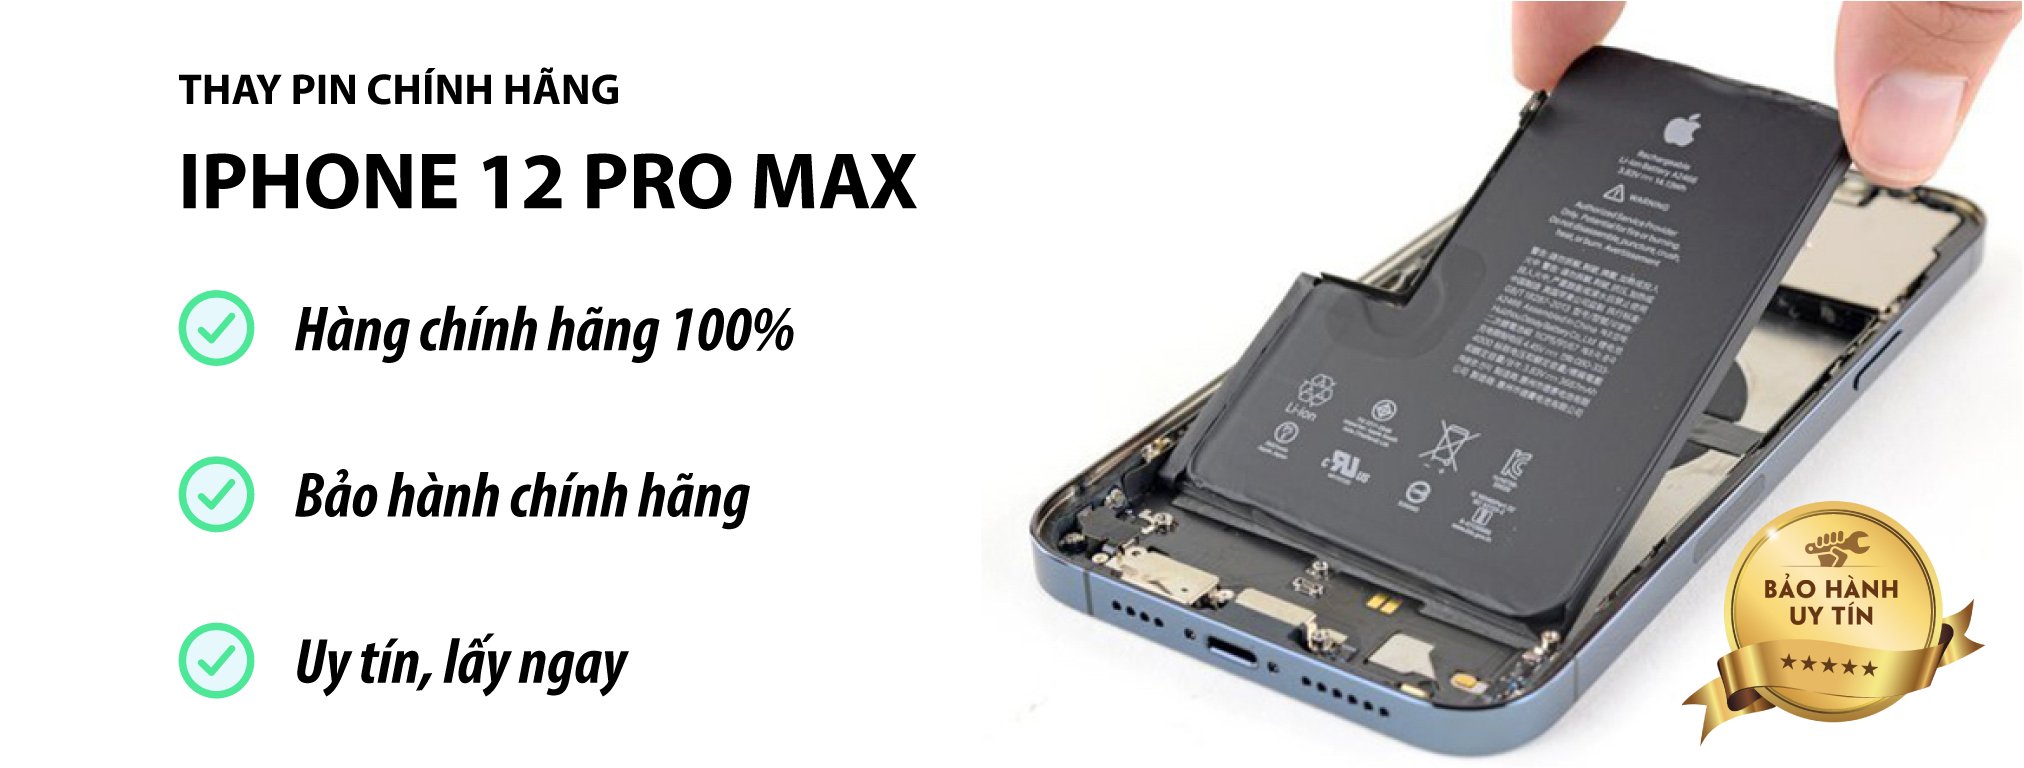 Thay pin iPhone 12 Pro Max chính hãng